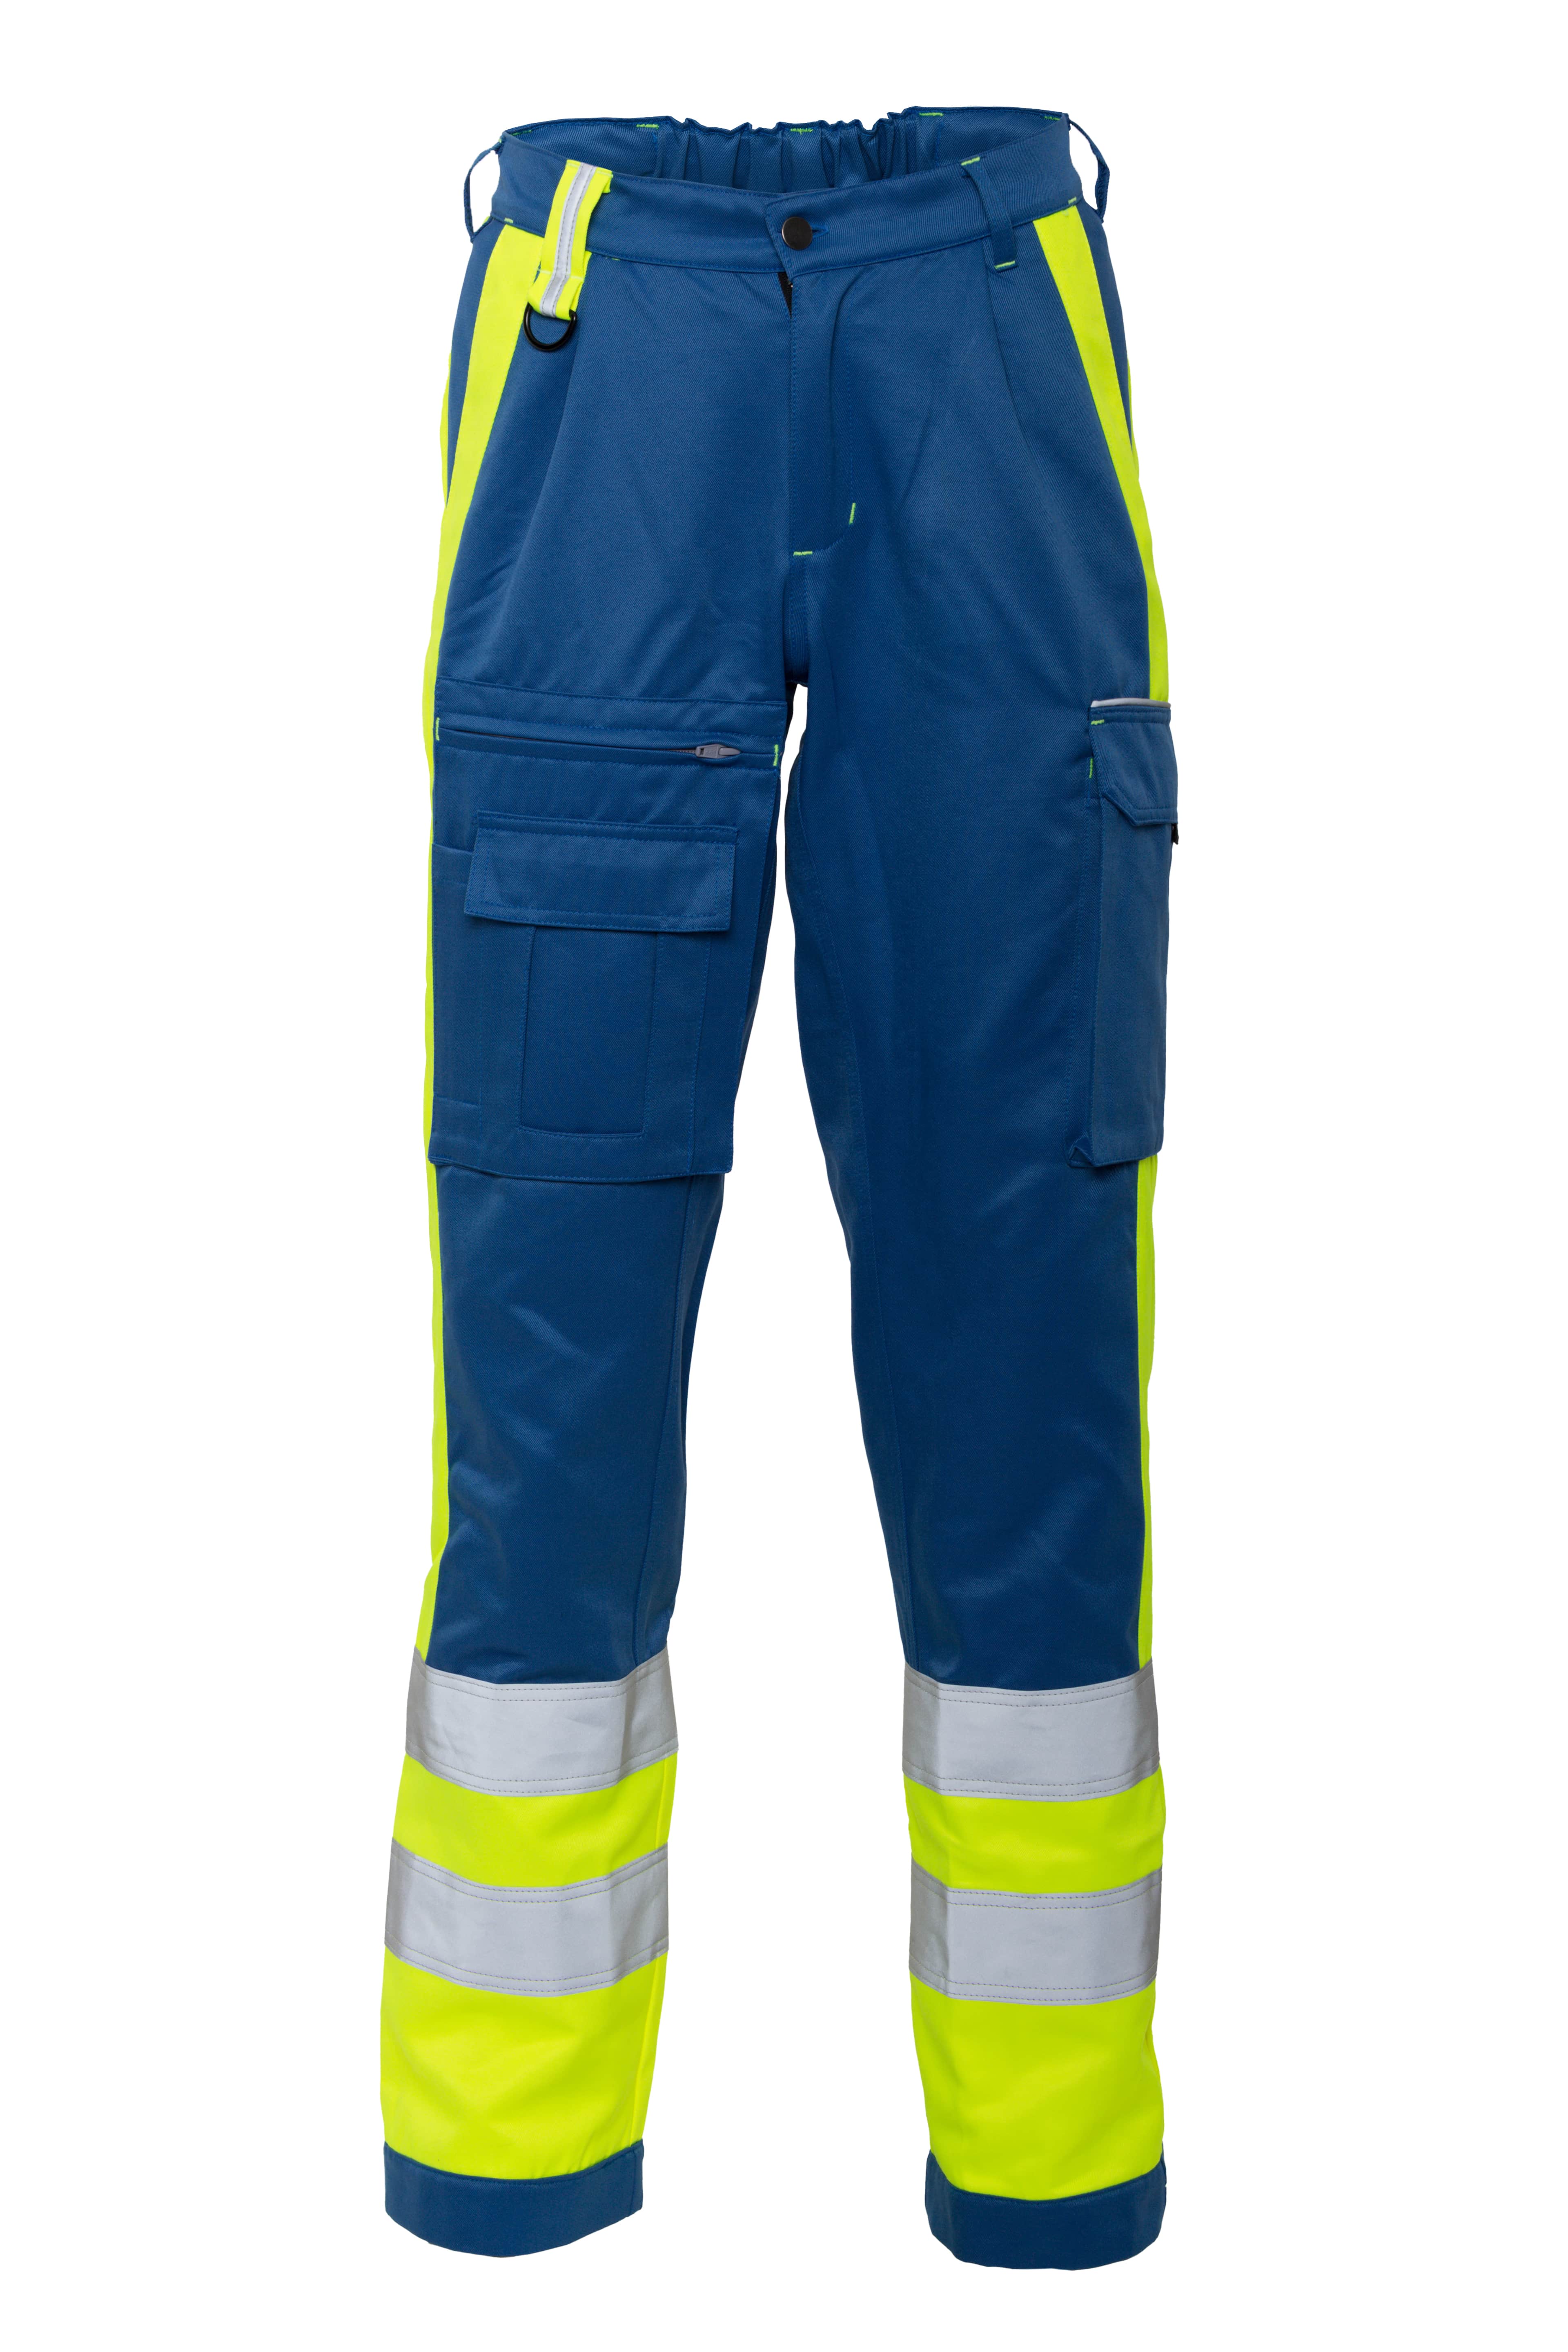 Rescuewear Unisex Hose 33416V2 Dynamic HiVis Klasse 1 Kobaltblau / Neon Gelb